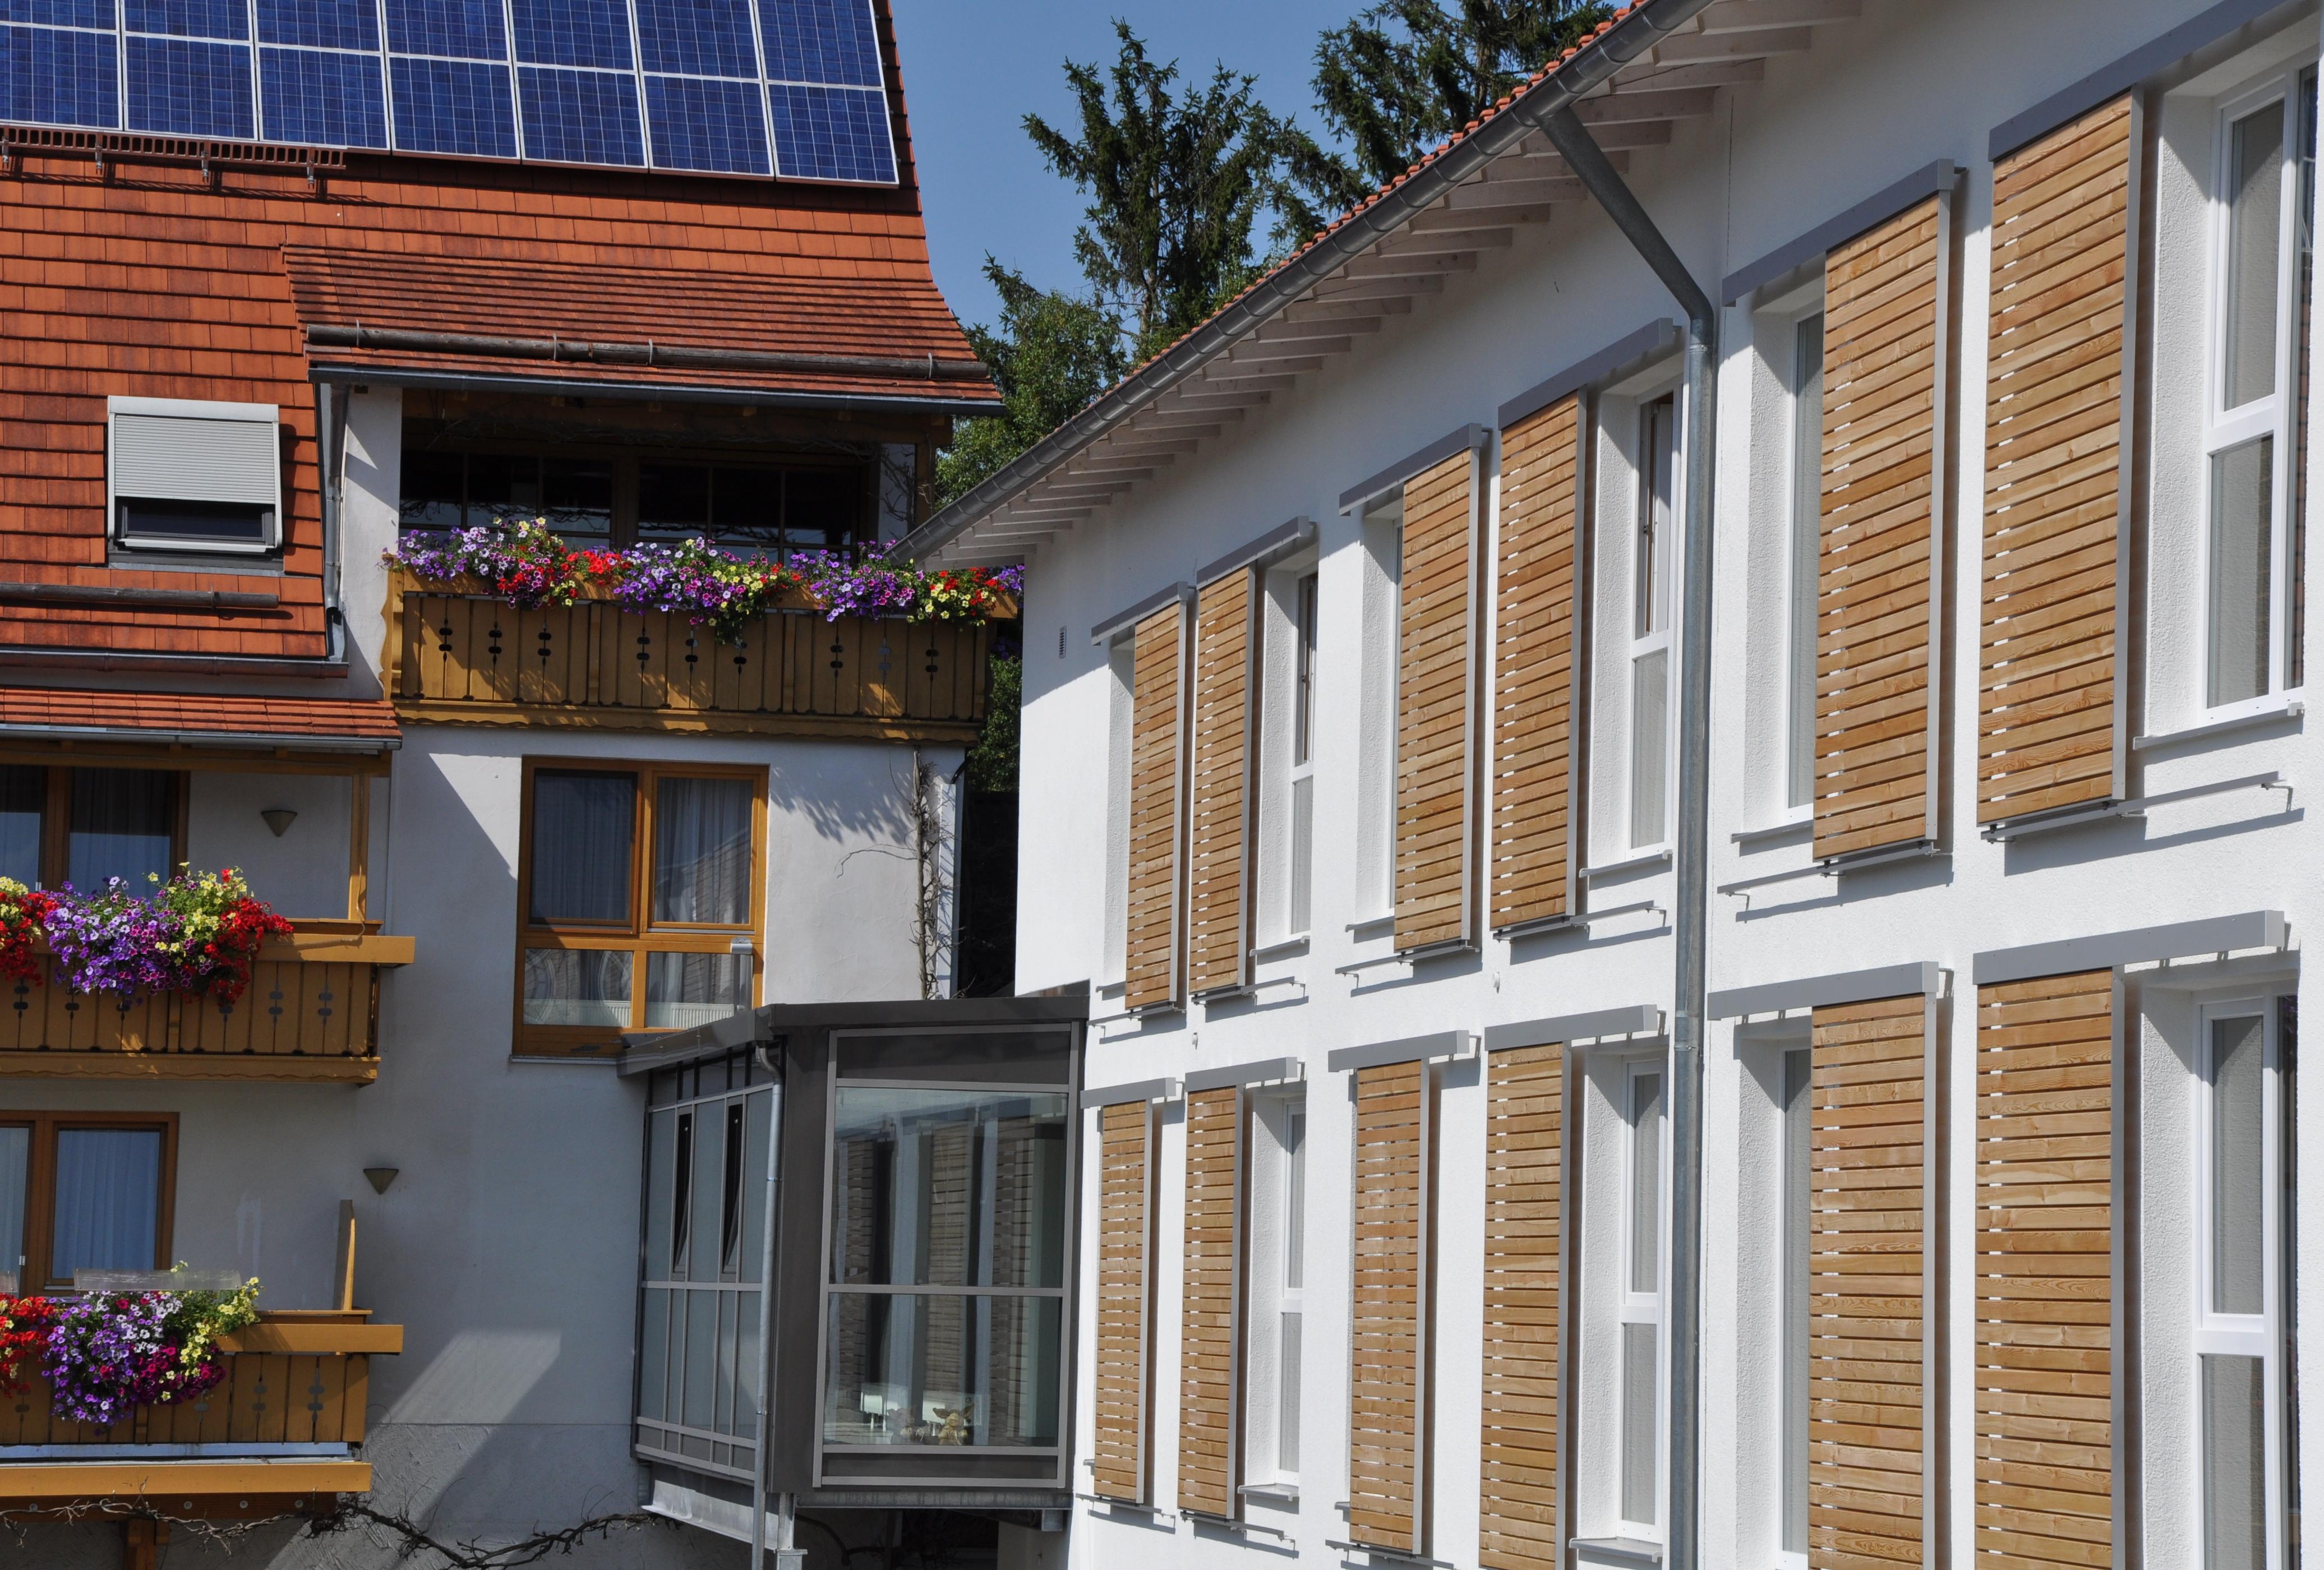 Holzschiebeläden. Der klassiche Sonnenschutz für Fenster.